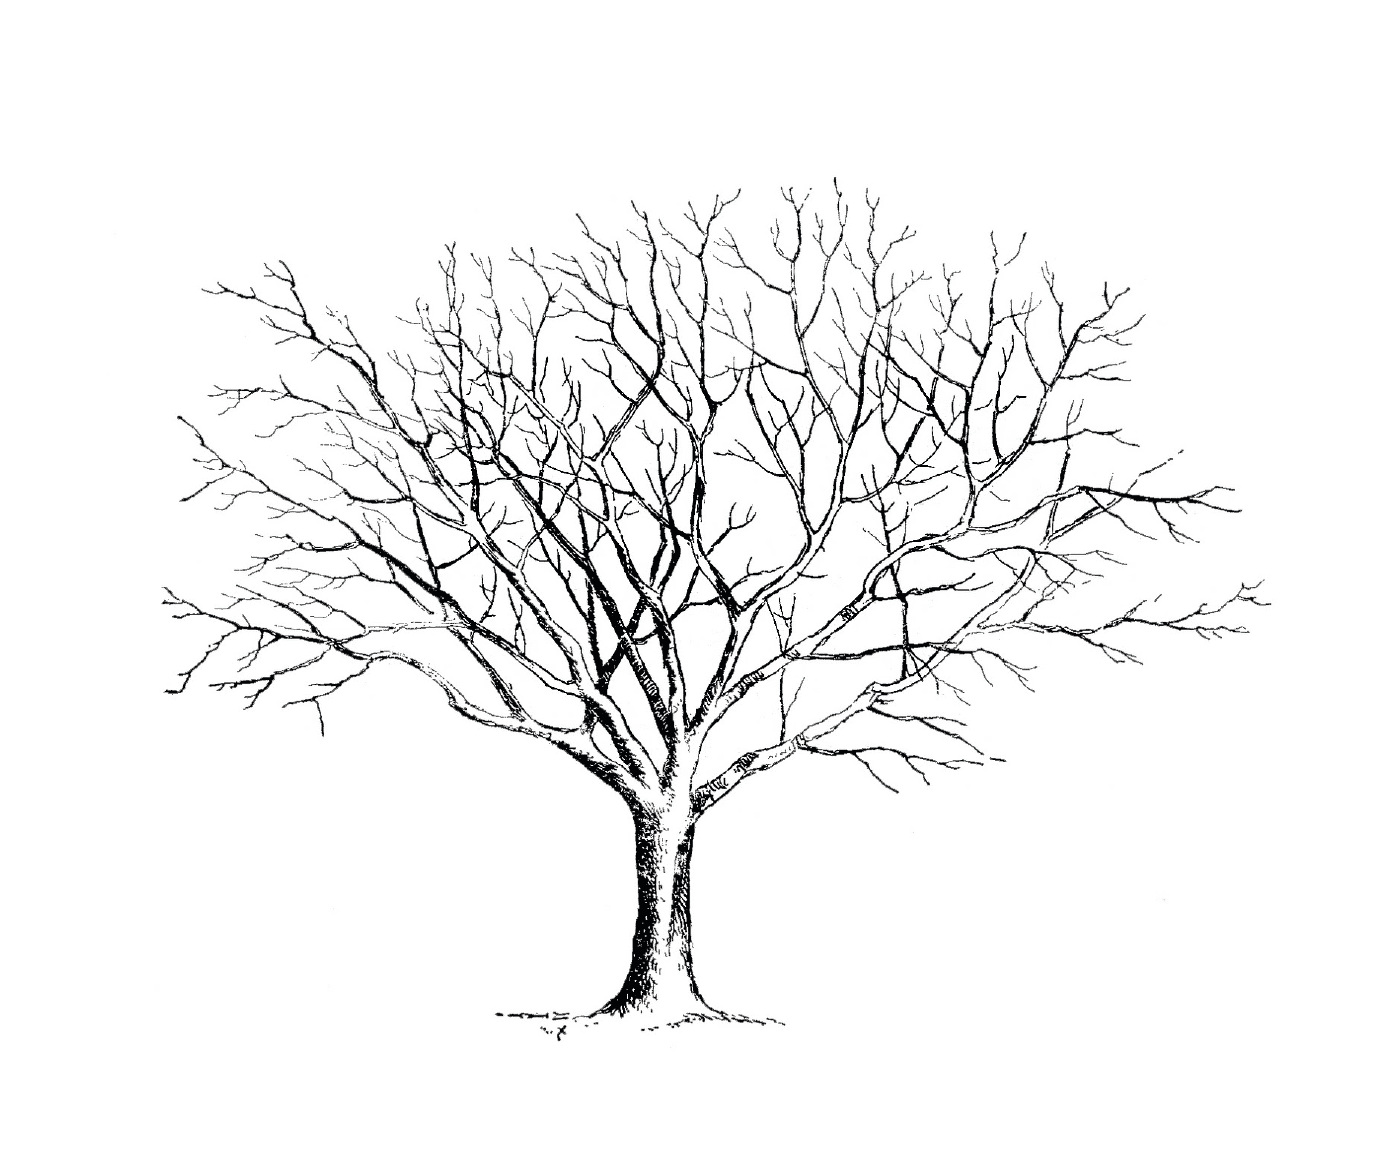  Ein nackter Baum ohne Blätter 